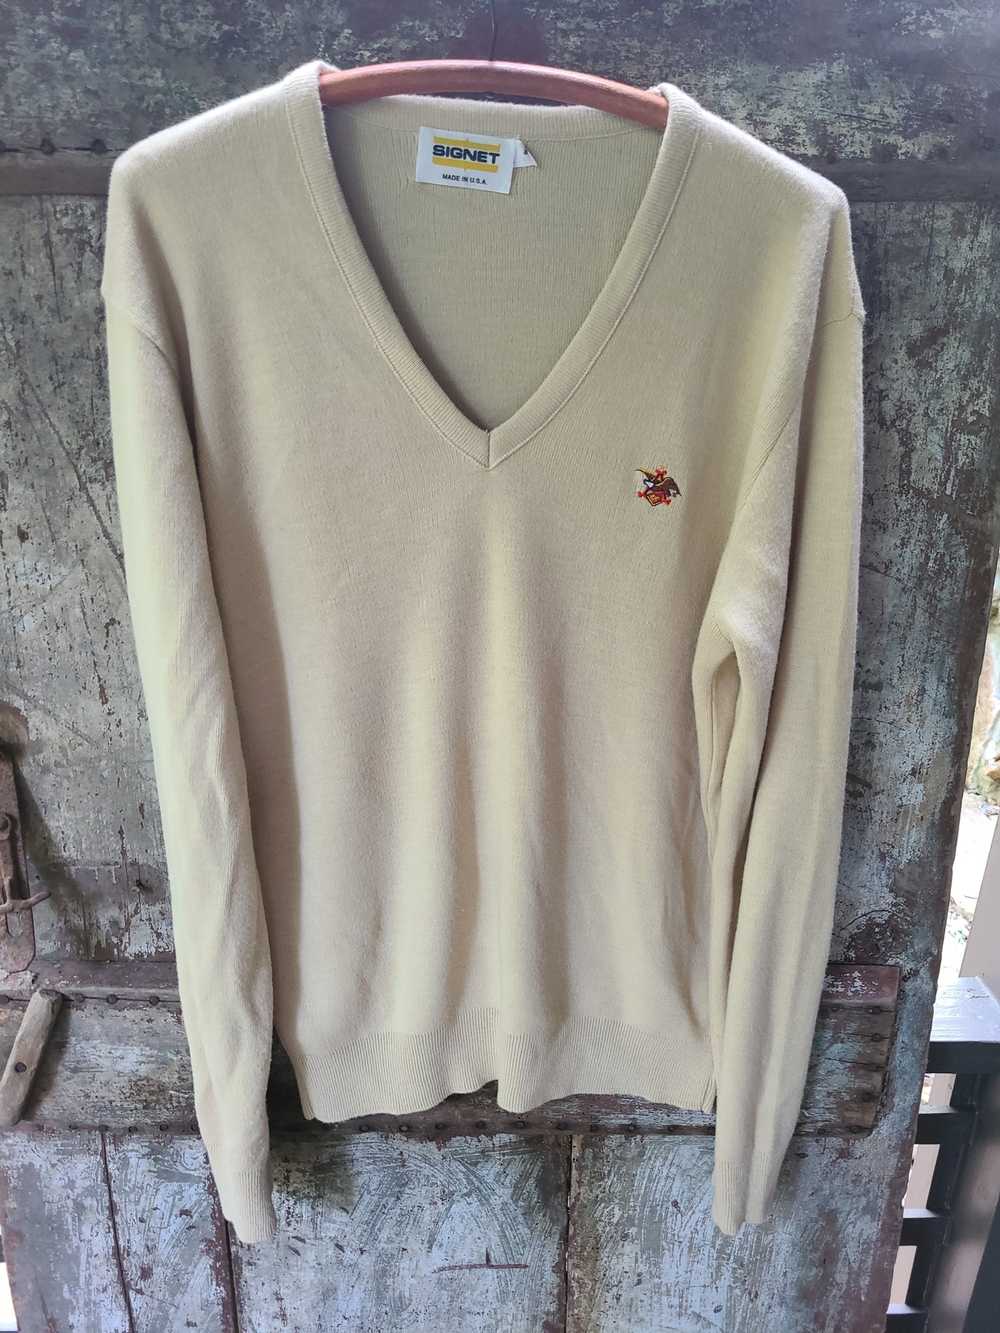 Vintage Vintage Anheuser-Busch Sweater - image 1